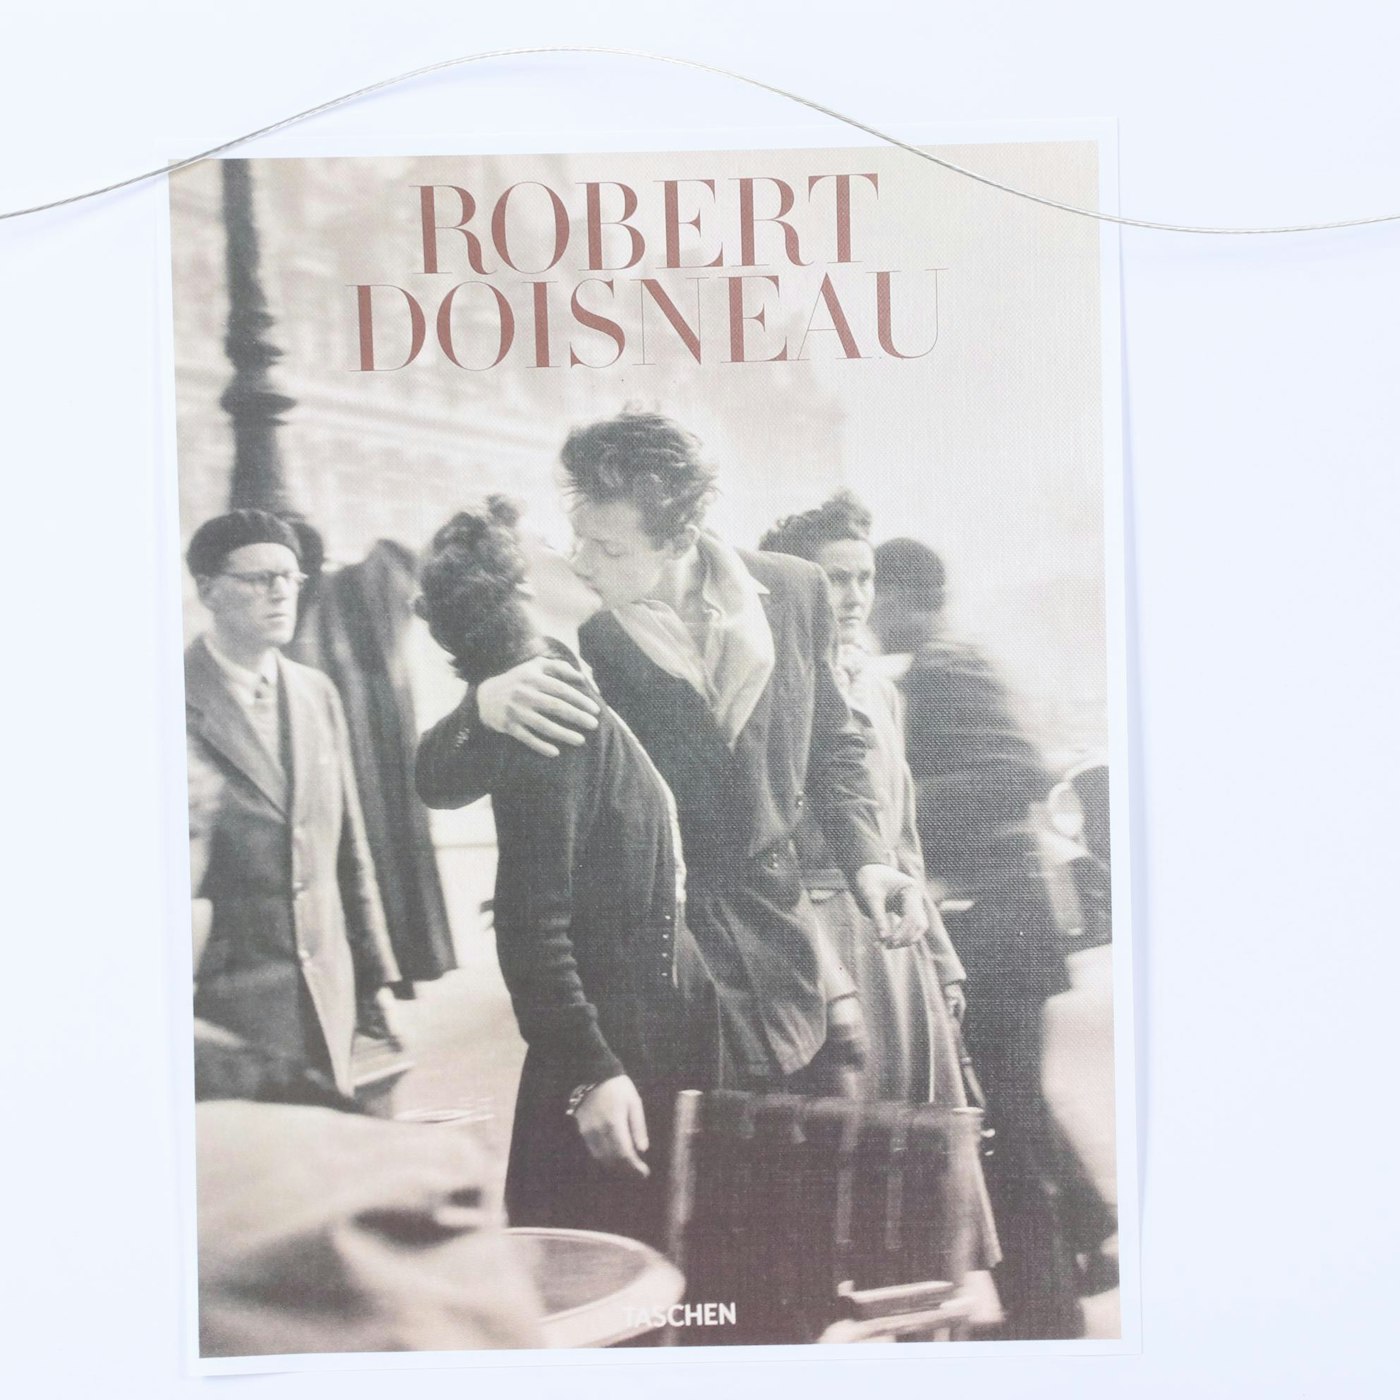 Offset Lithograph after Robert Doisneau 